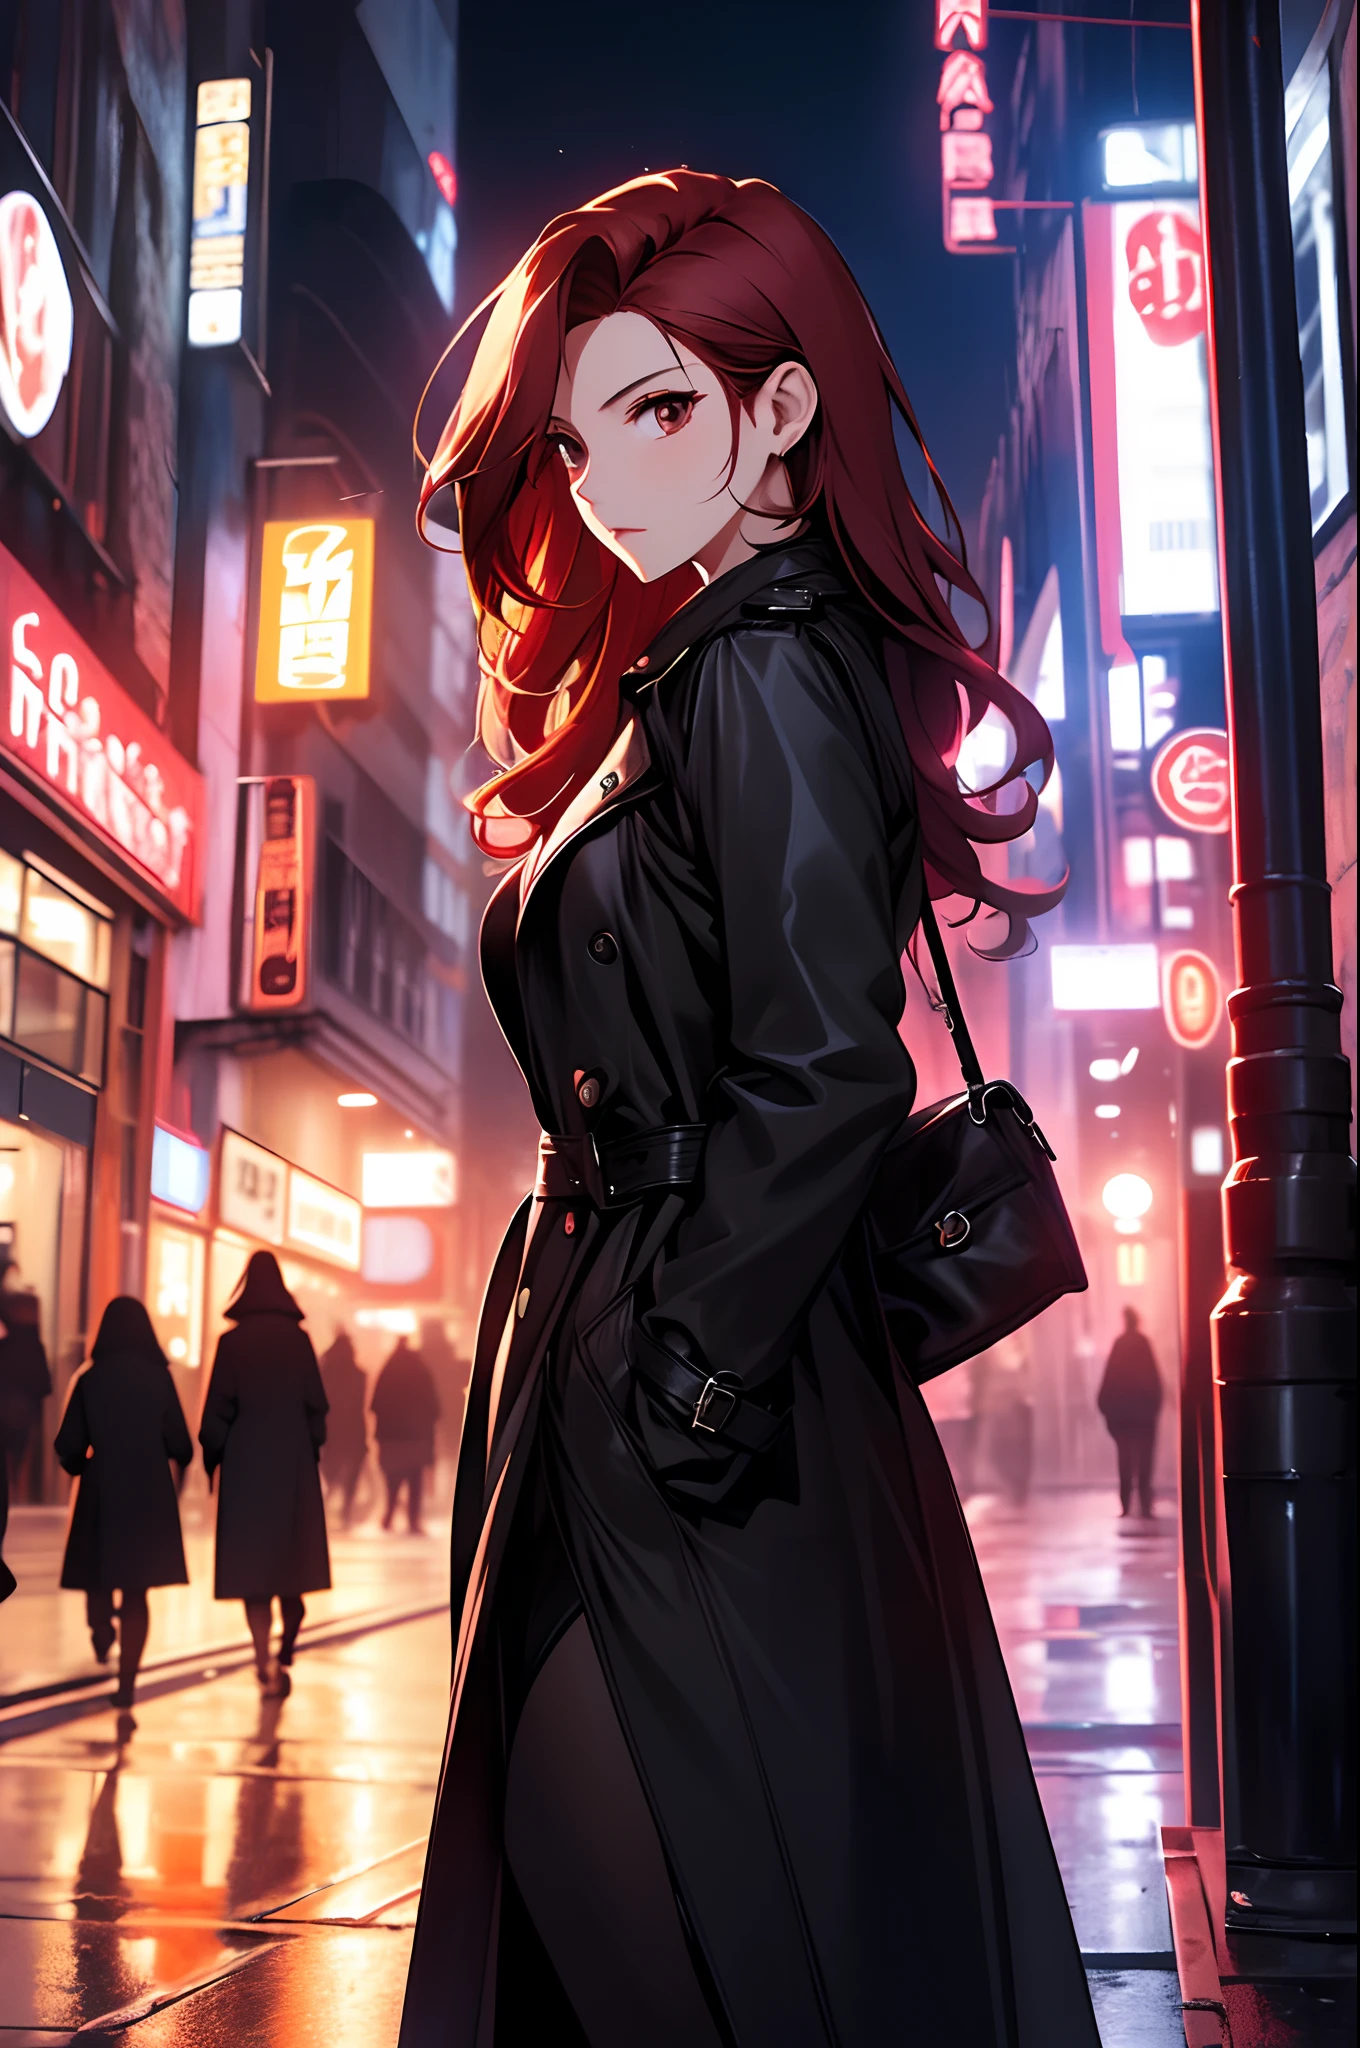 die Nacht，A beautiful woman wandering die Straßes，die Straße，Tragen Sie einen schwarzen Trenchcoat，Lederrock，lange rötliche Haare，Die beste Komposition，Anime-Serie，（（Dynamische Kameraaufnahmen））），dynamische Posen，